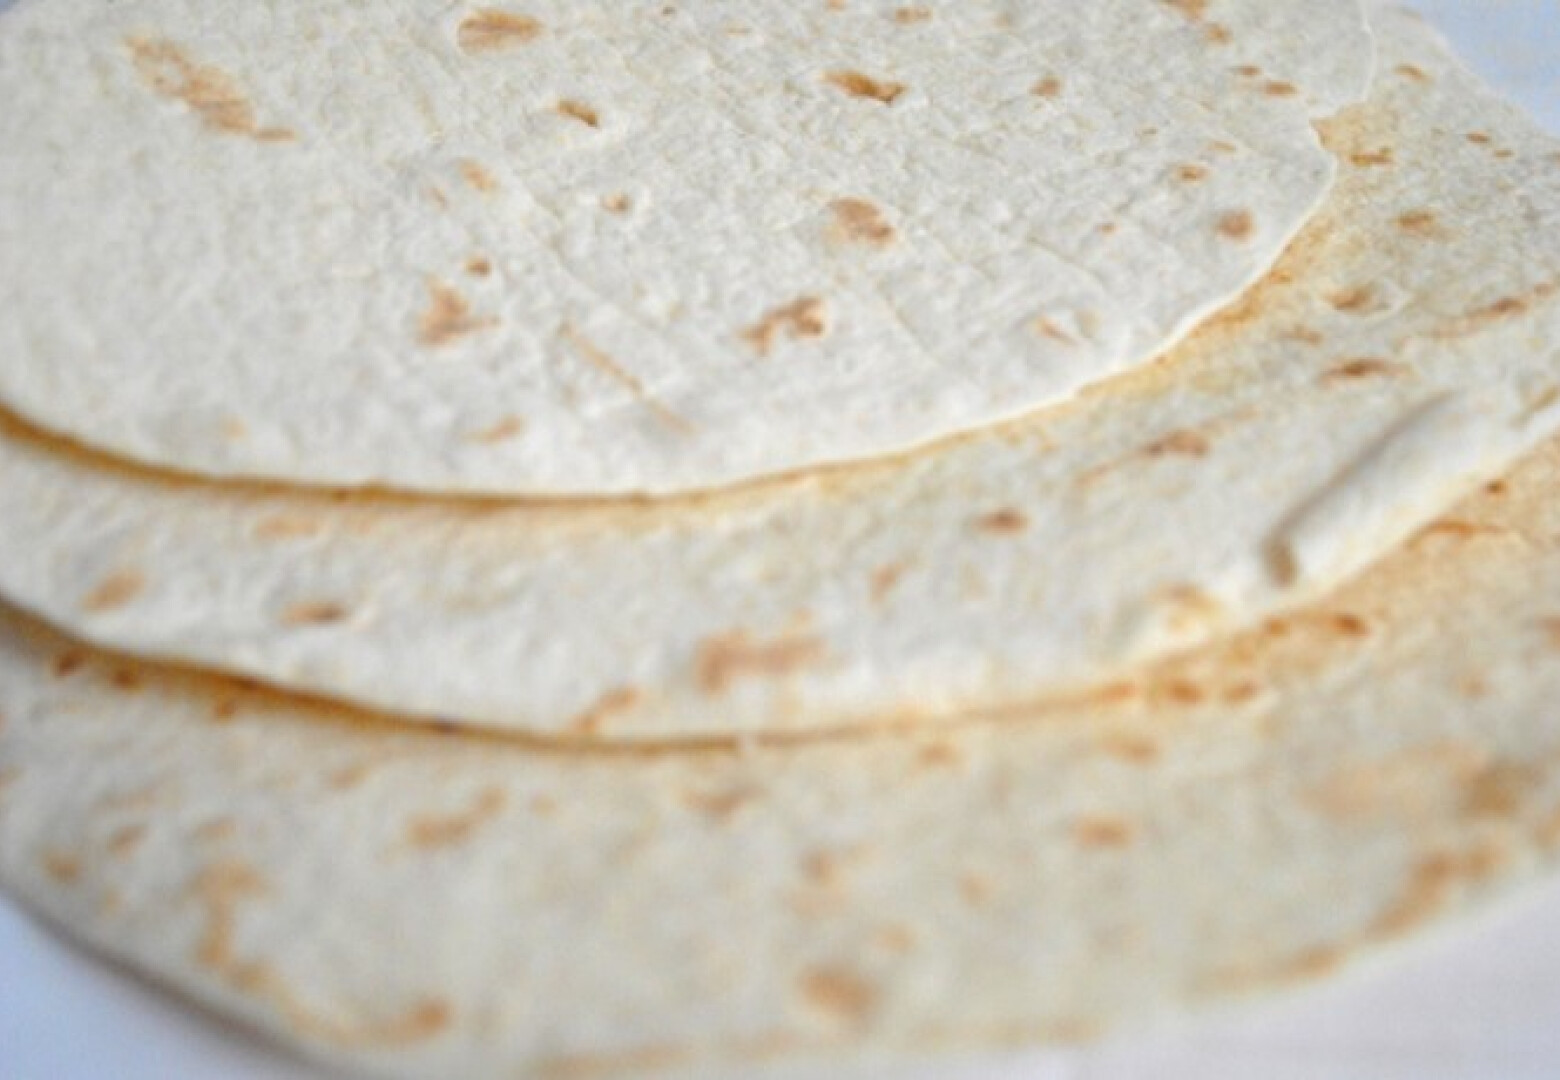 Fogyni kukorica tortilla - Chipsek és sós rágcsálnivalók - Lehetnek egészségesek?